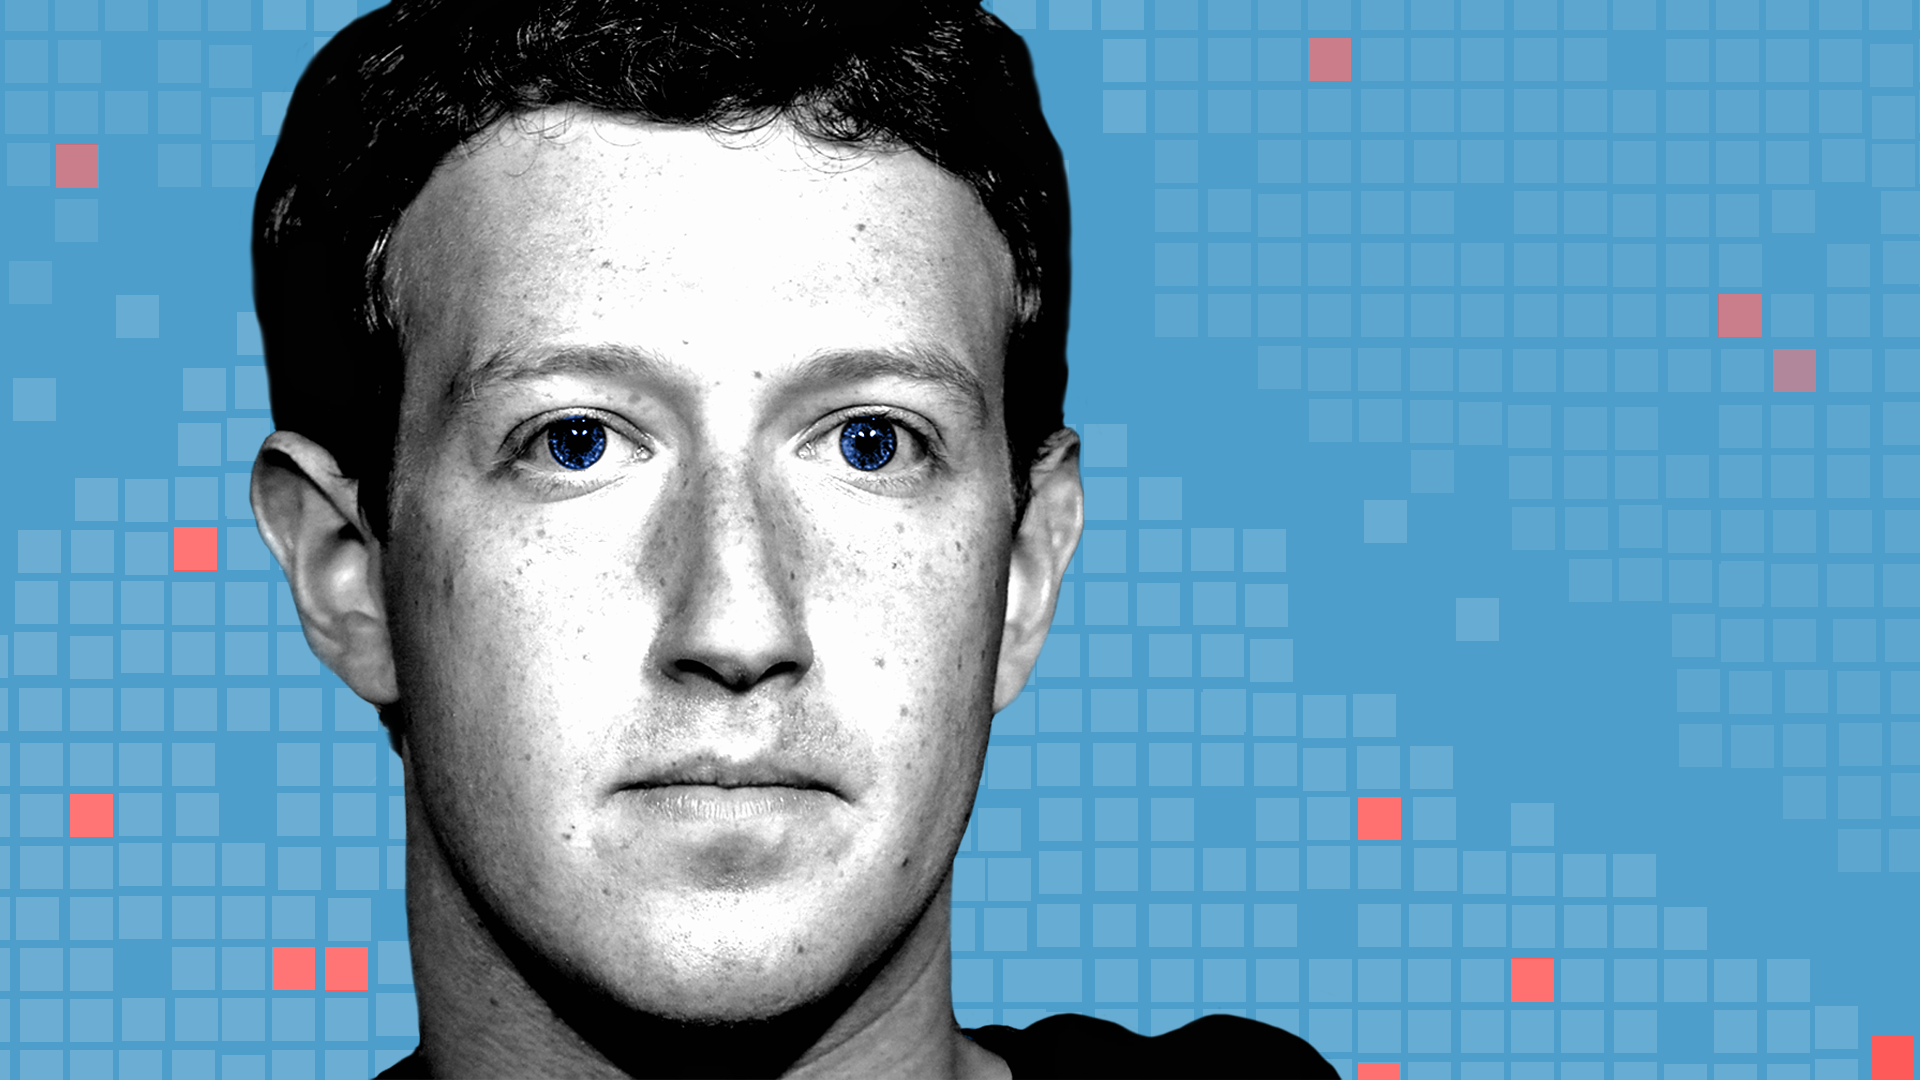 An illustration of Facebook CEO Mark Zuckerberg